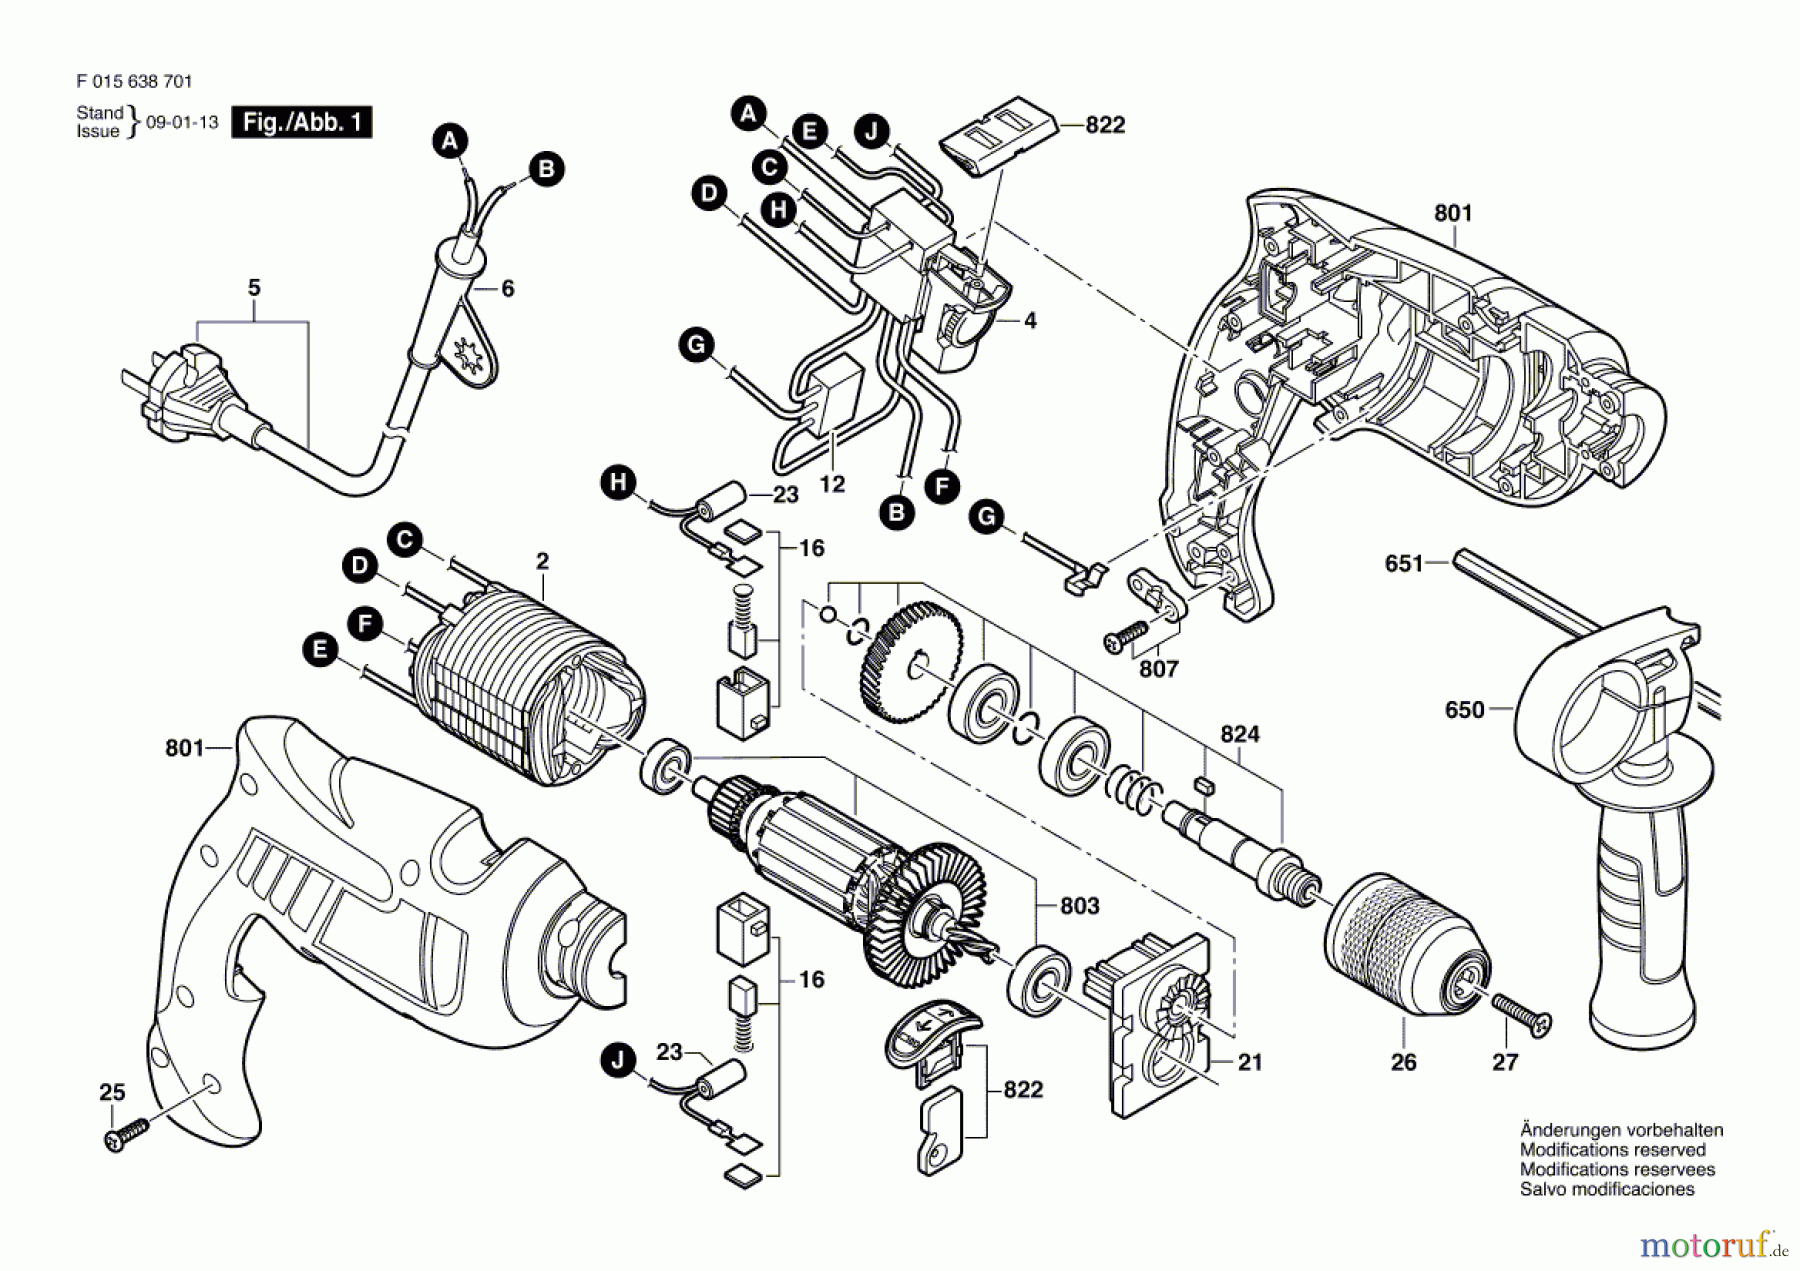  Bosch Werkzeug Schlagbohrmaschine 6410 Seite 1